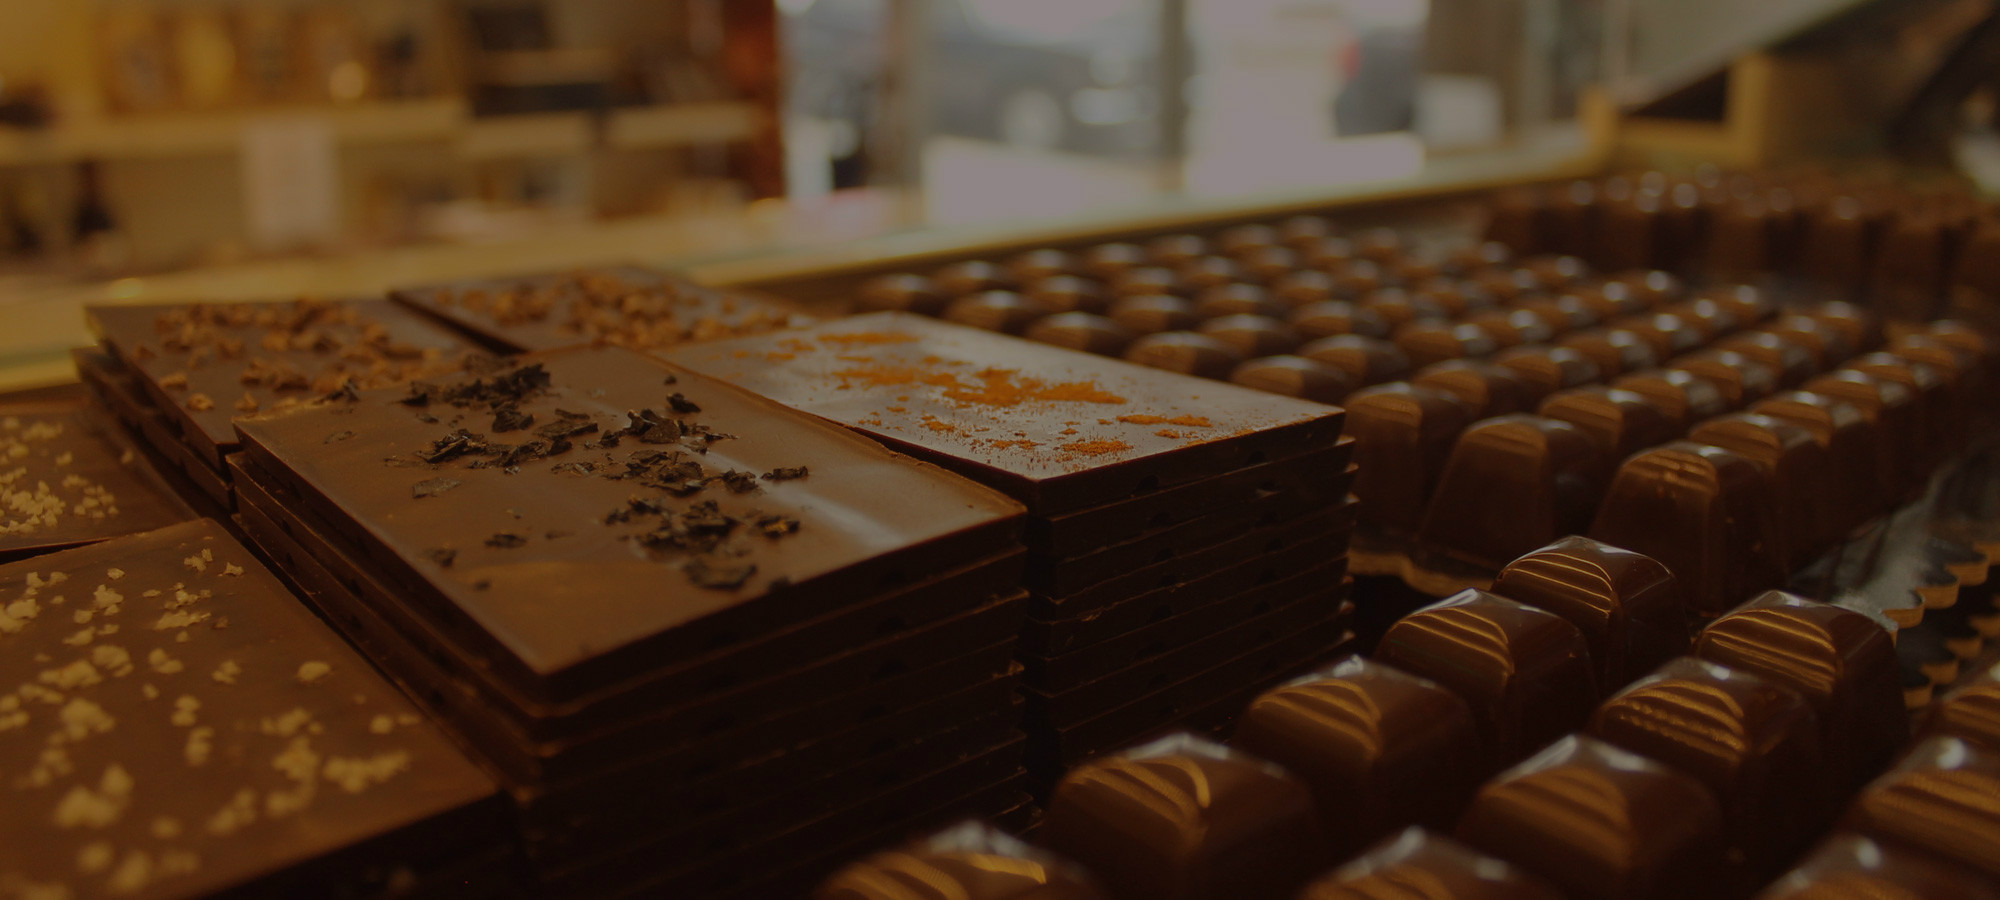 'Fábrica do Chocolate' Shop